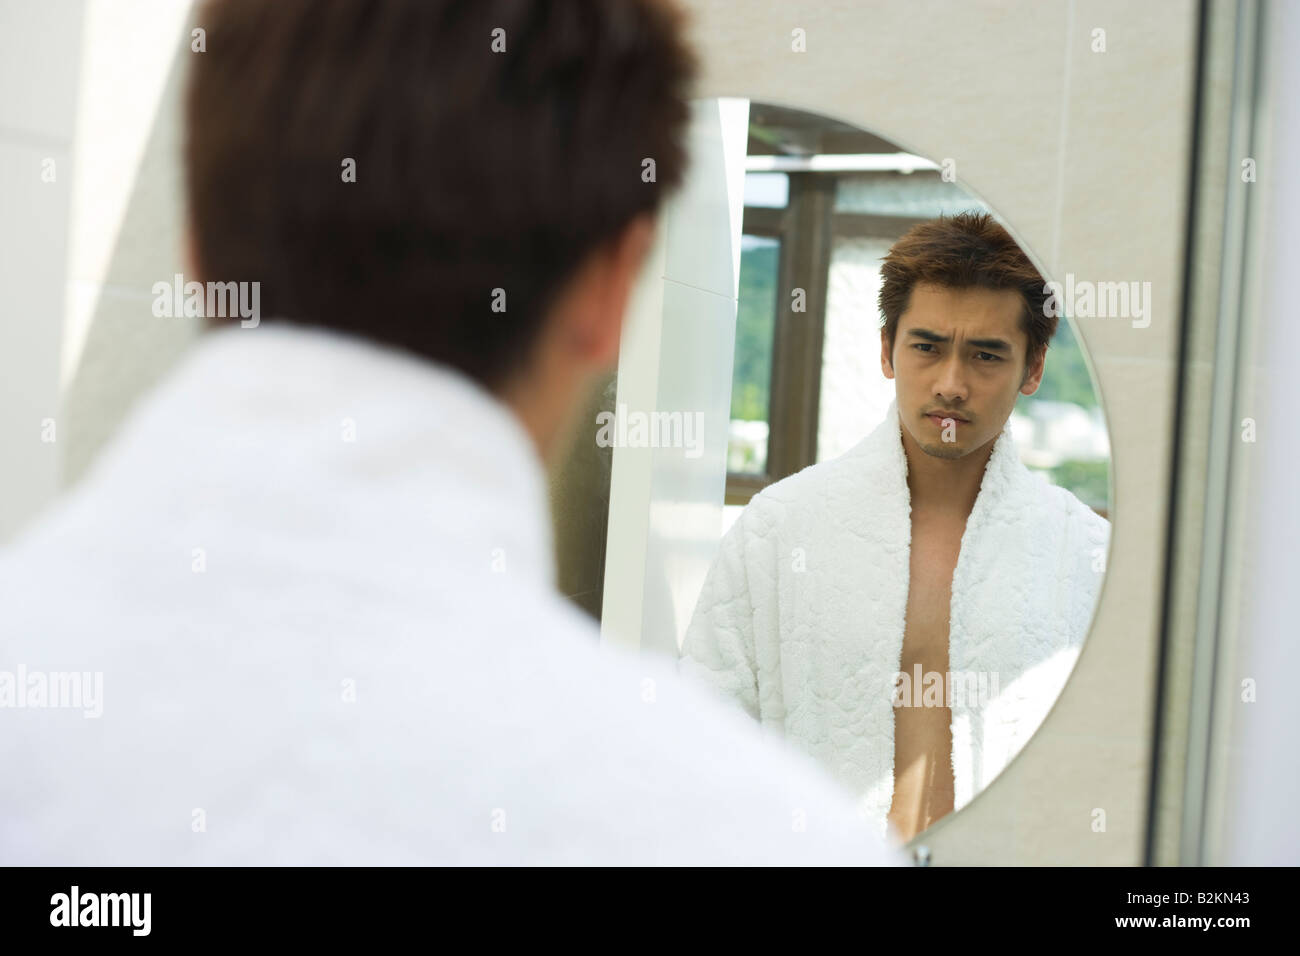 Jeune homme debout devant un miroir Banque D'Images